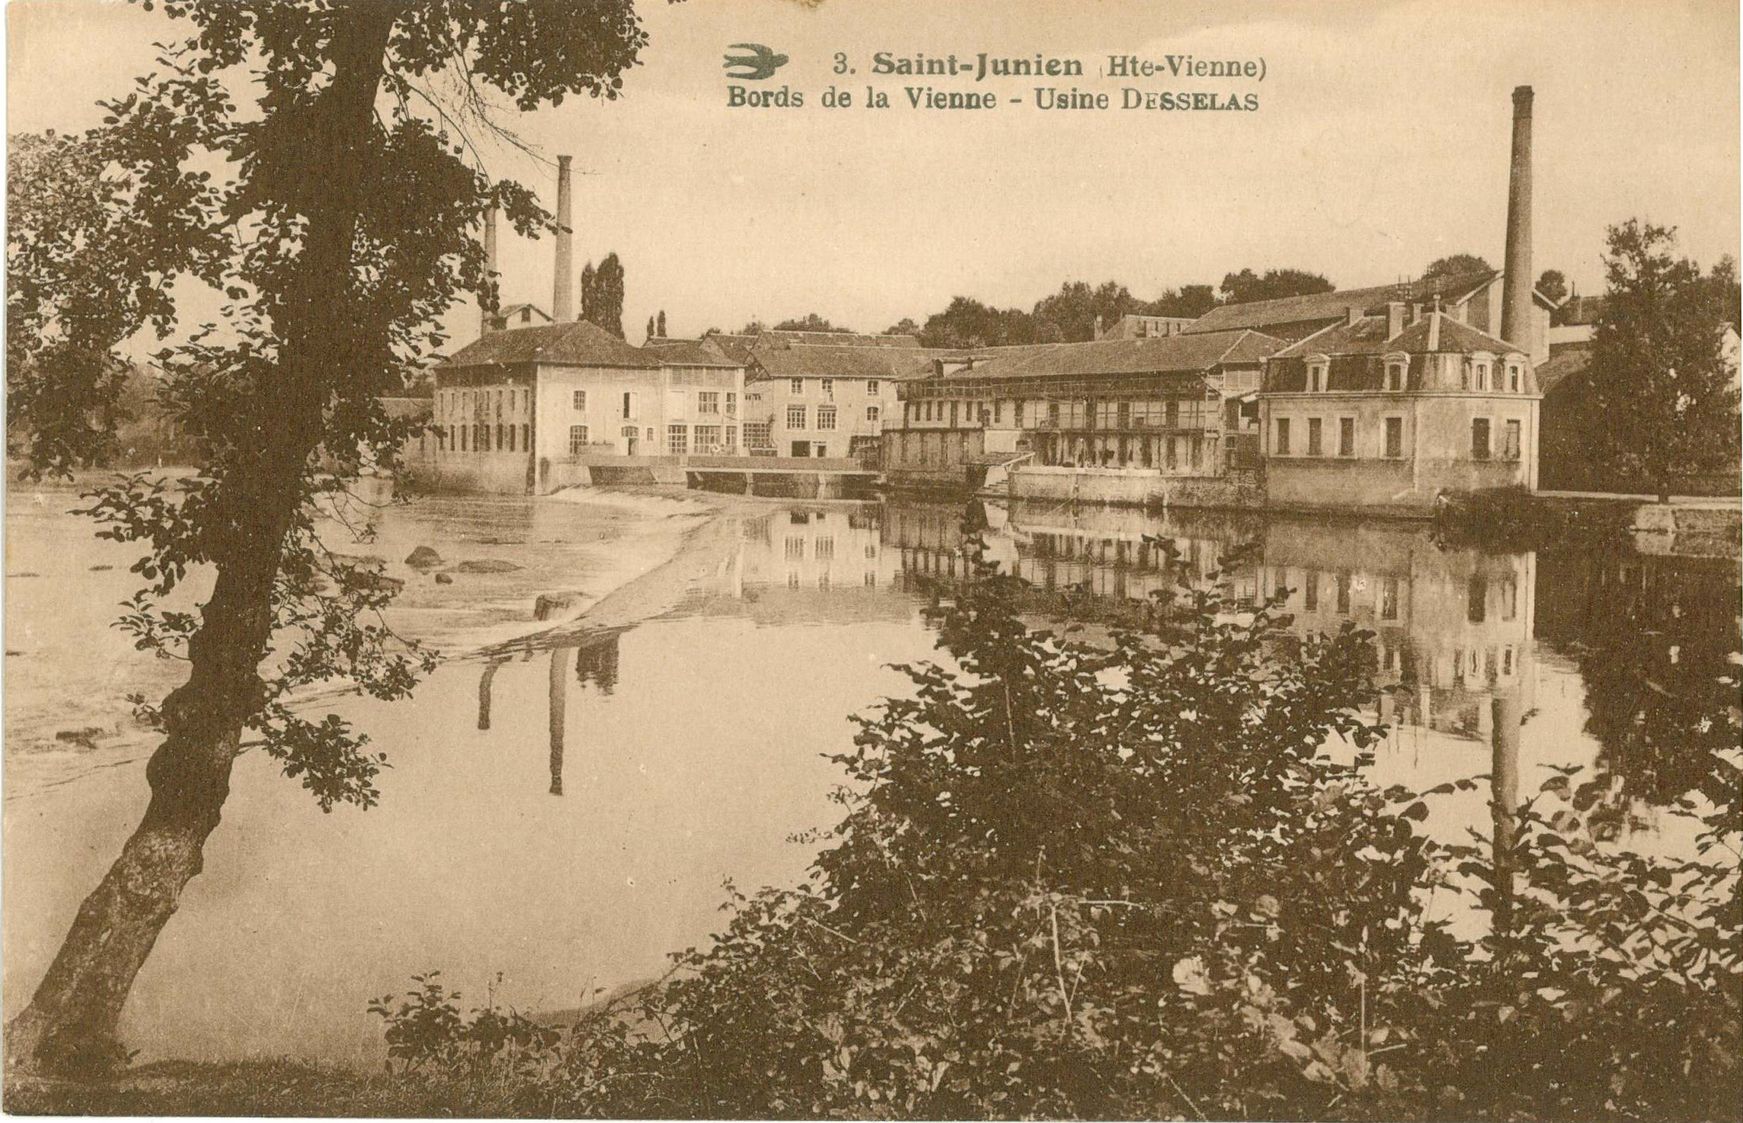 La mégisserie vue depuis l'amont du barrage, en la rive gauche. Carte postale l'Hirondelle, vers 1900.